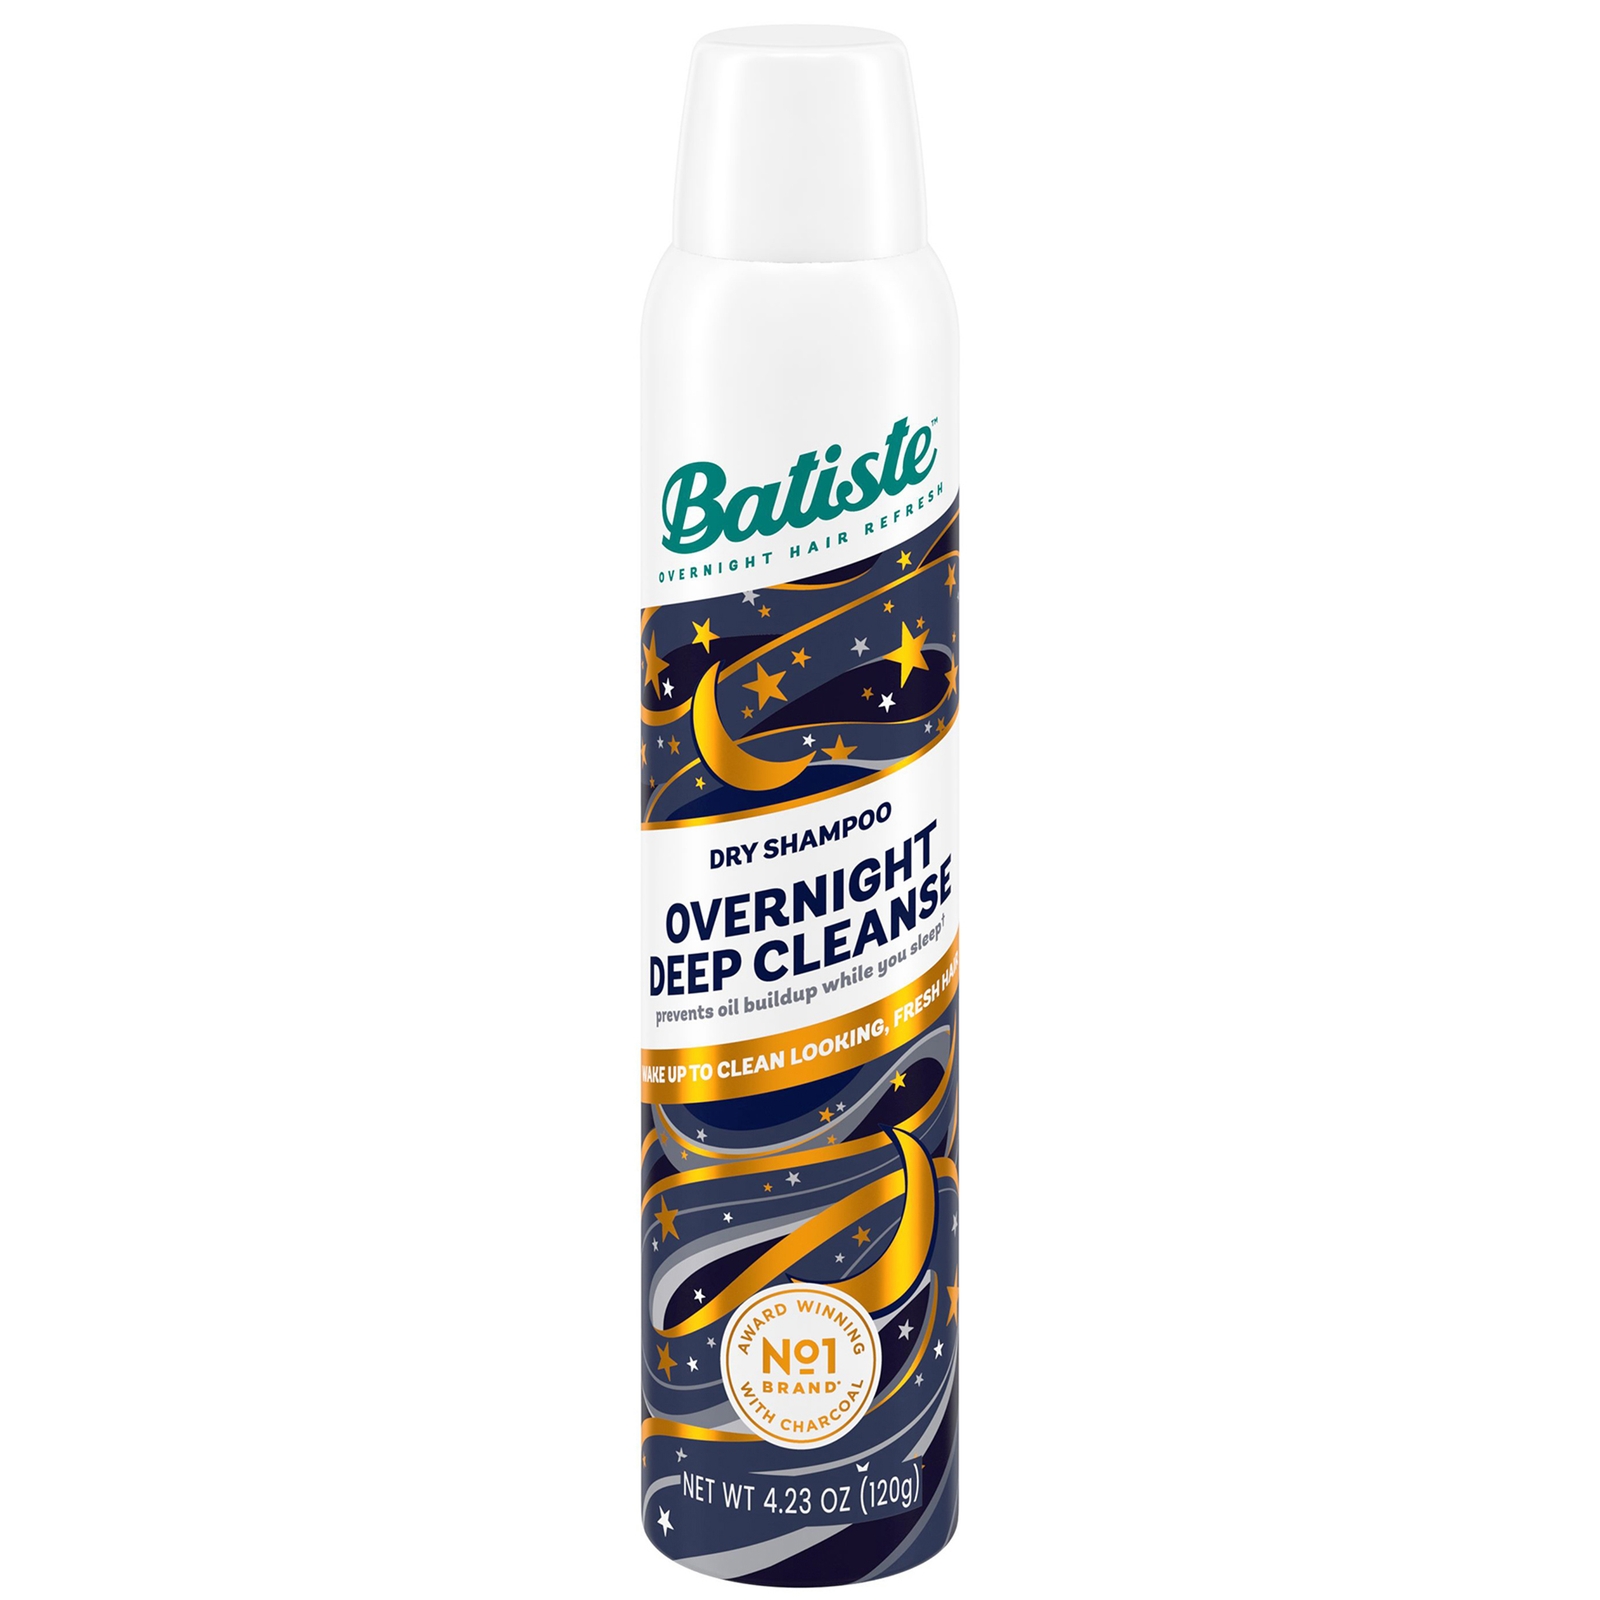 Photos - Hair Product Batiste Overnight Deep Cleanse Dry Shampoo 200ml 508013 